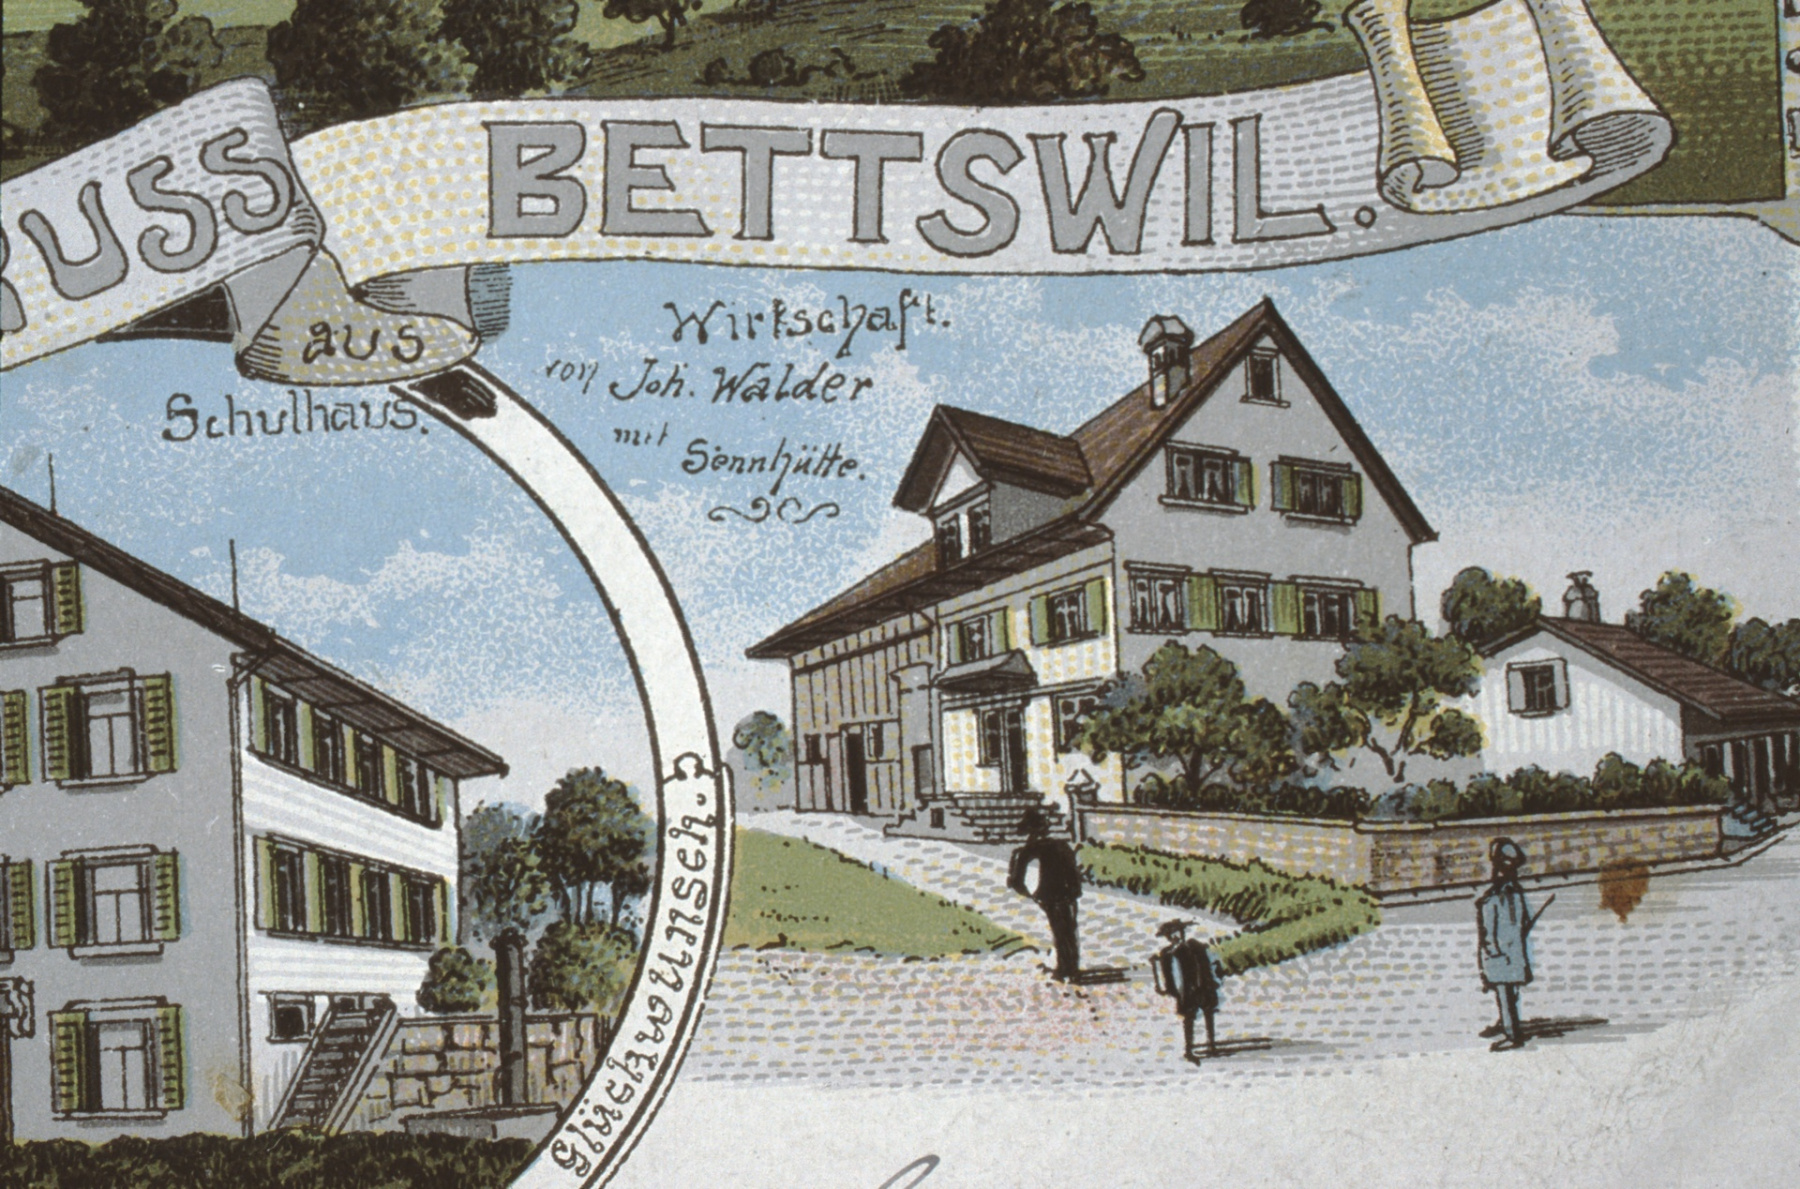 Bettswil, Wirtschaft Joh. Walder